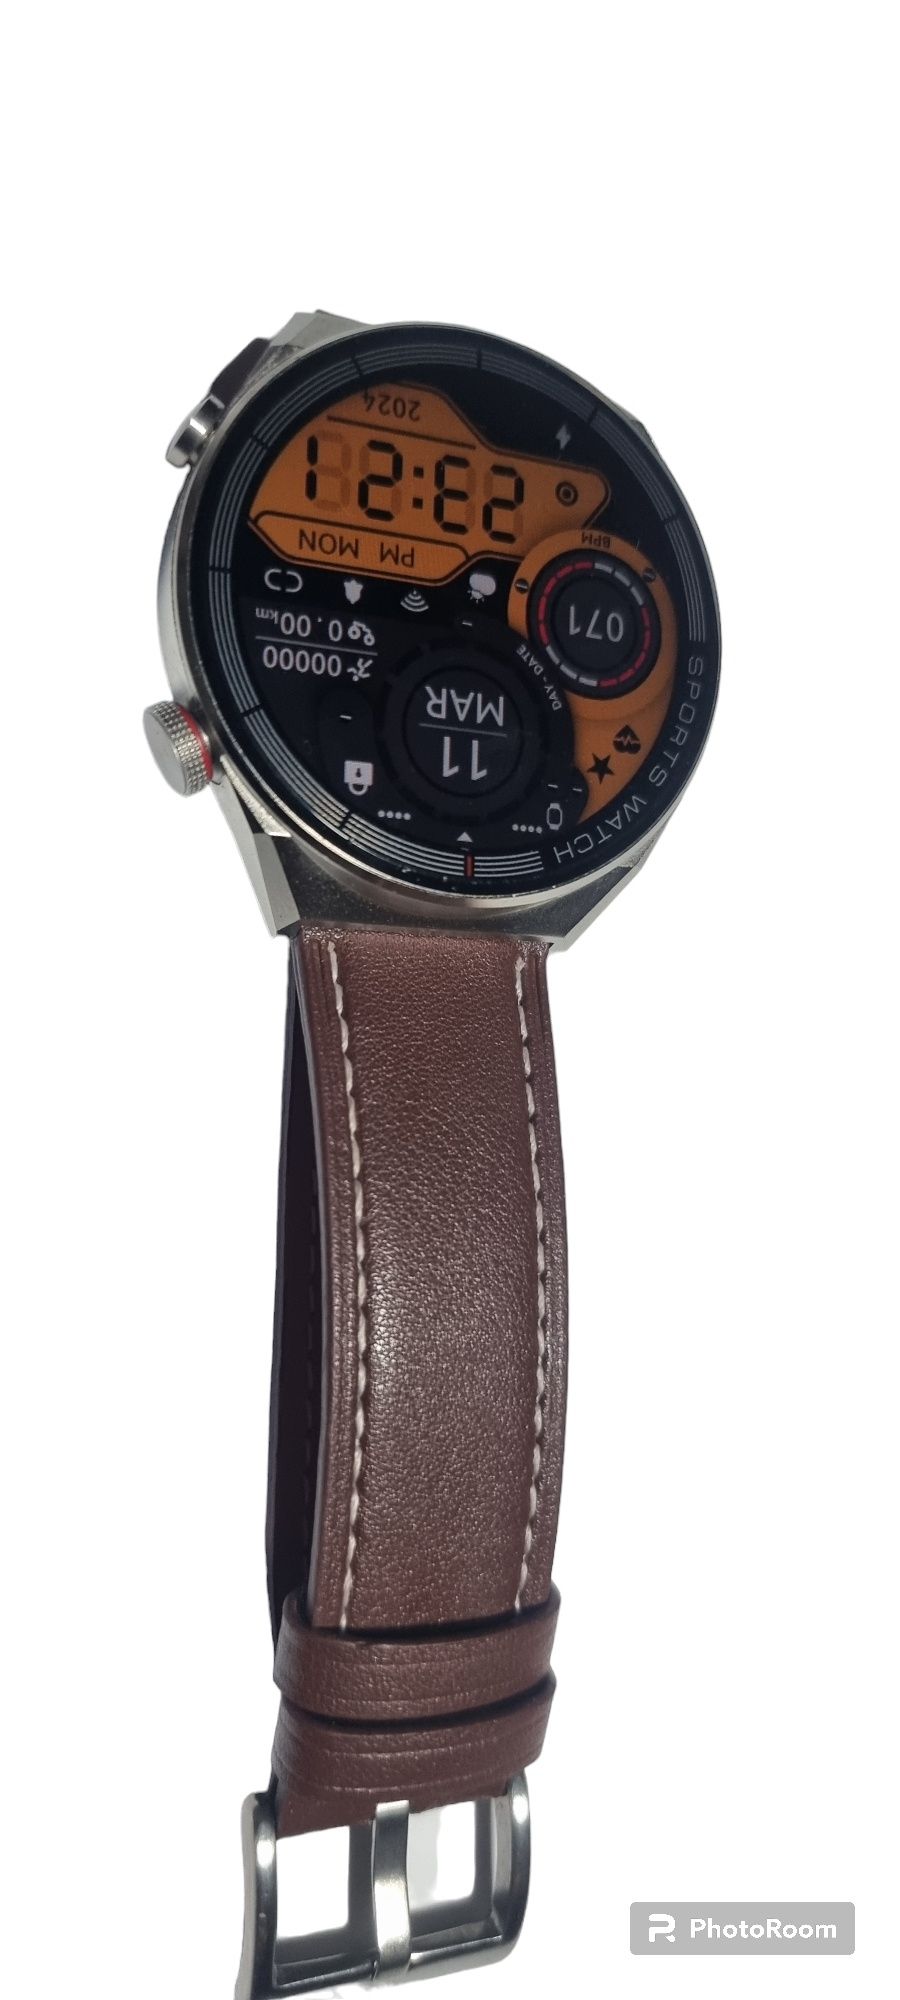 Zegarek smart watch mate DT3 wear pro